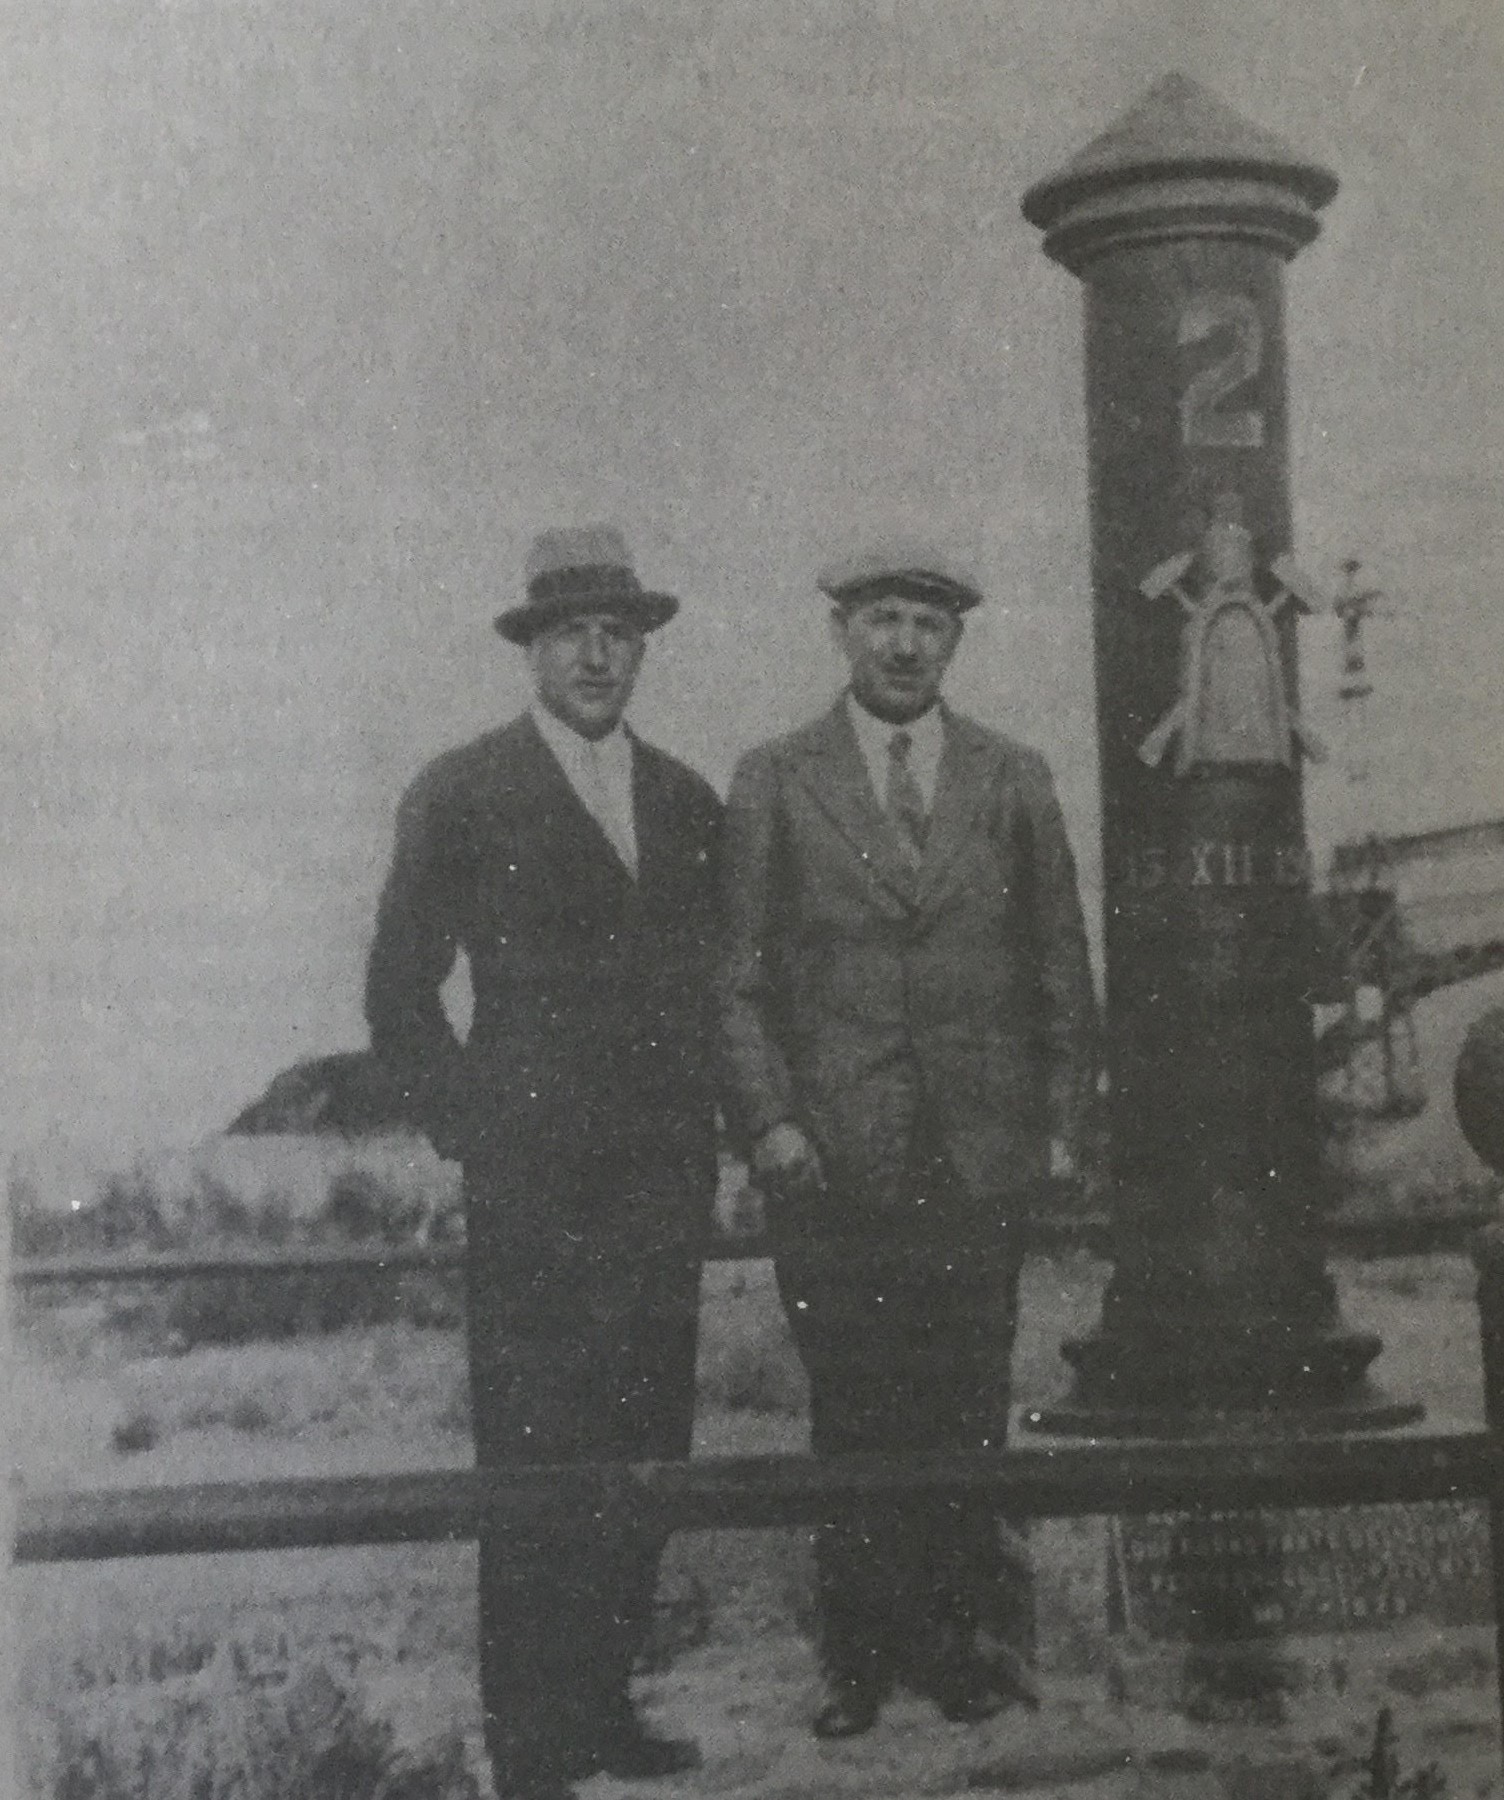 A la derecha, José Fuchs, acompañado por un periodista, junto al monumento conmemorativo que recuerda la histórica fecha del 13 de diciembre de 1907 (Foto Historia de YPF, Congreso Nacional)